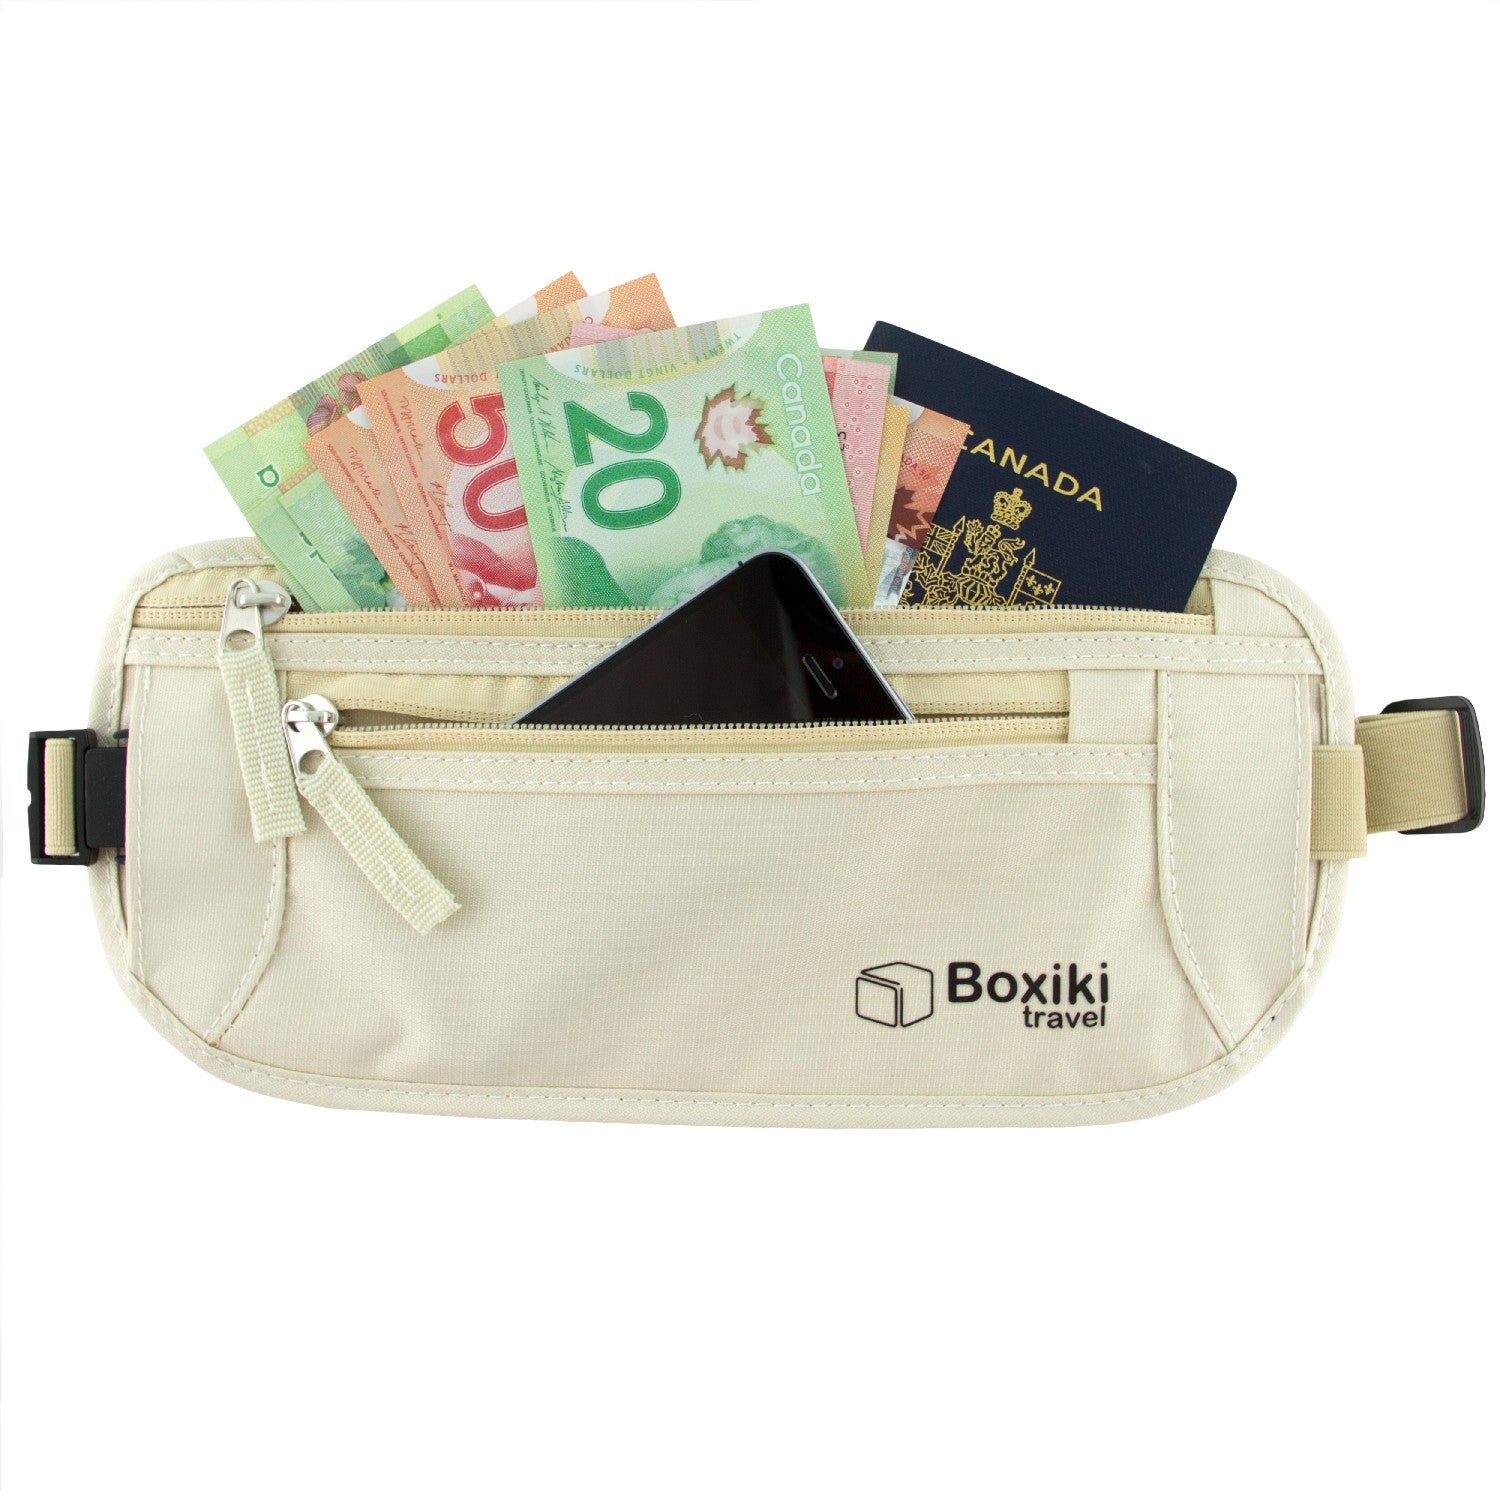 boxiki travel money belt